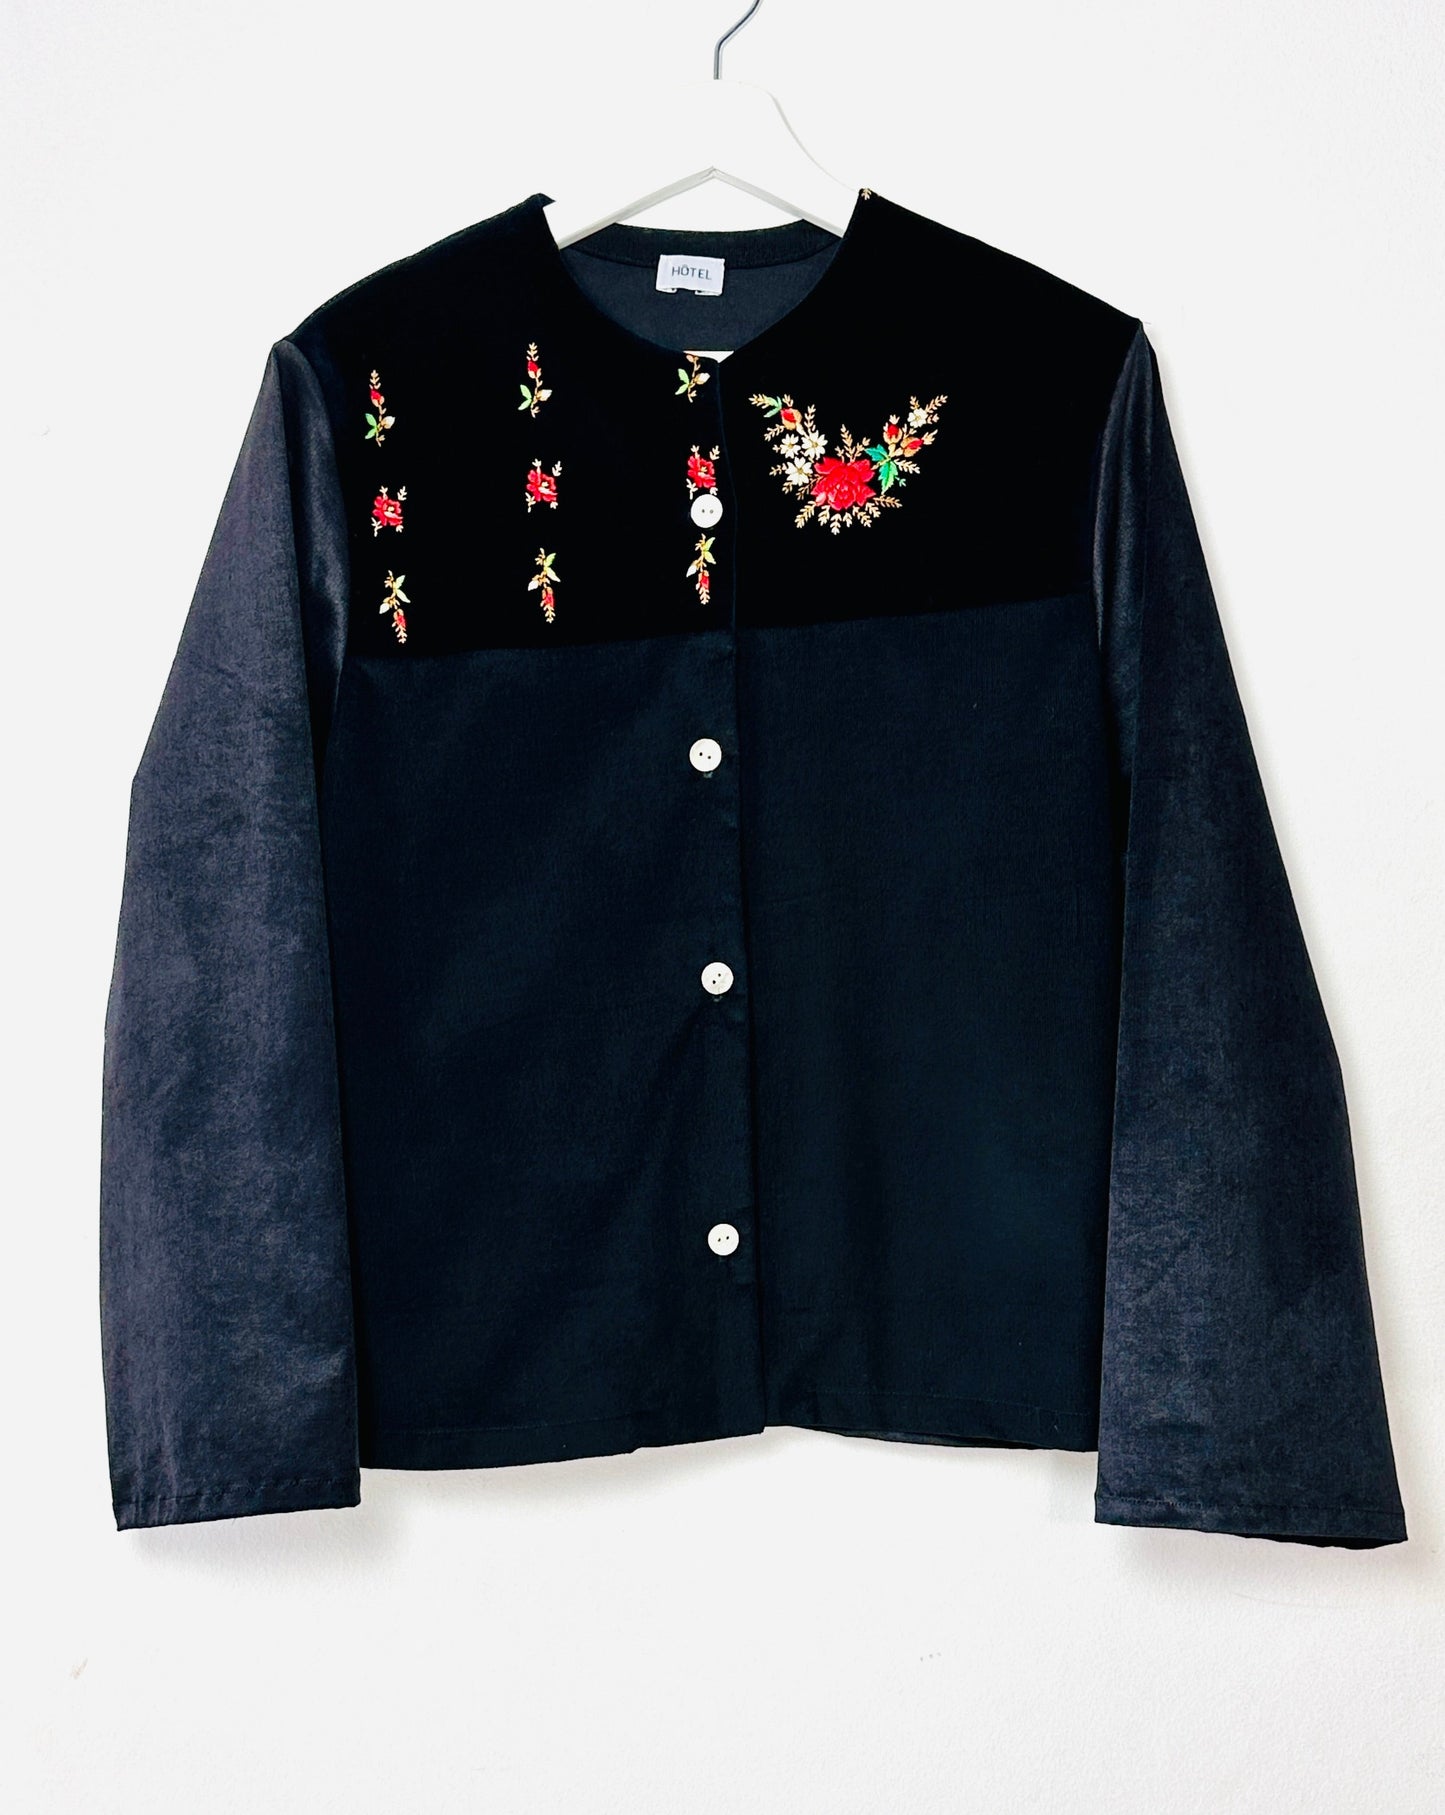 Belleville handmade embroidered jacket